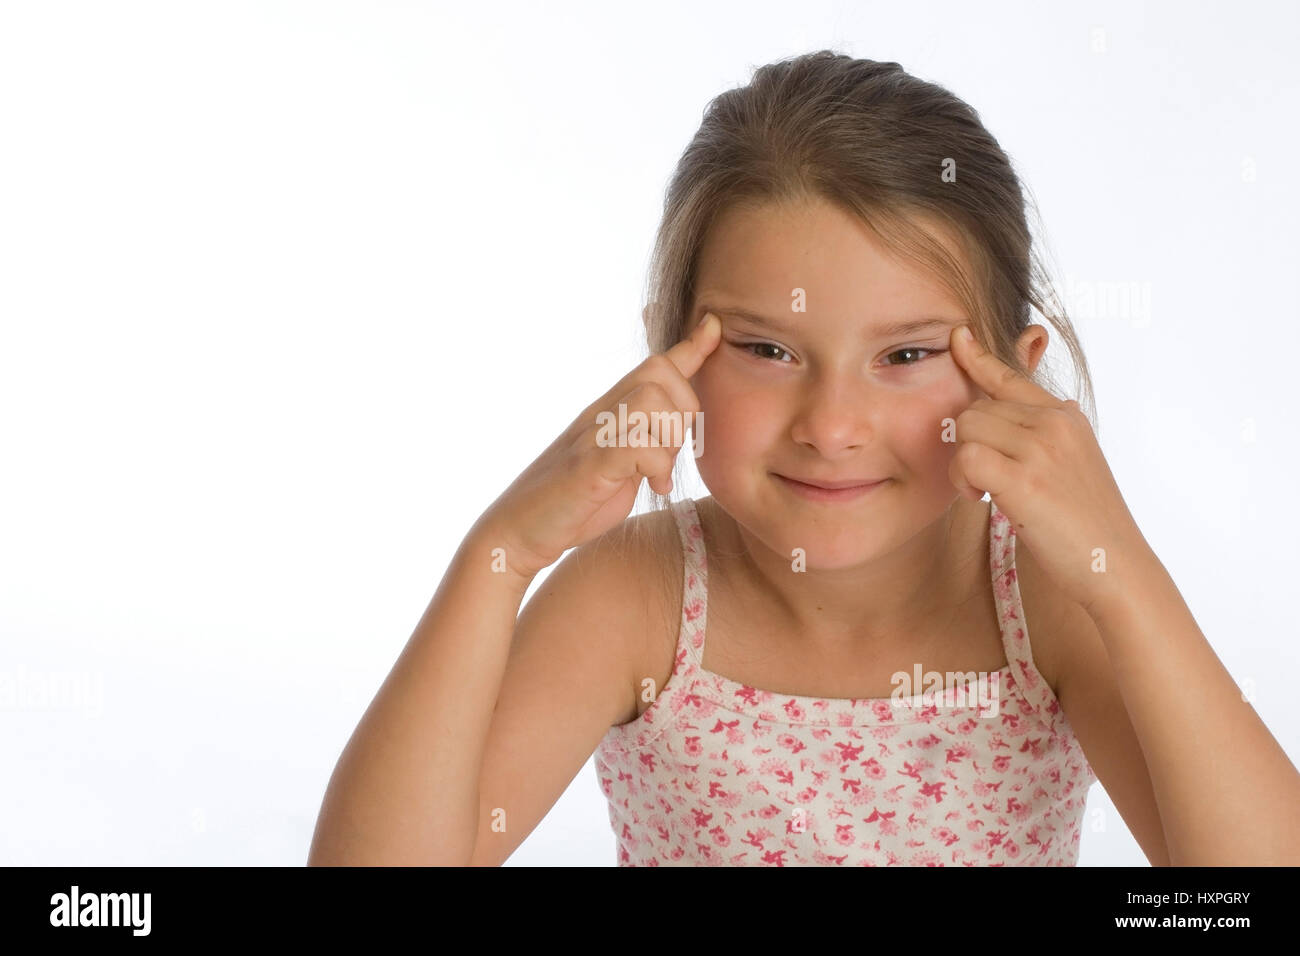 6-year-old girl with Chinese character for xxxxxxxxx (mr), sechsjähriges Mädchen mit chinesischem Schriftzeichen für xxxxxxxxx (mr) Stock Photo